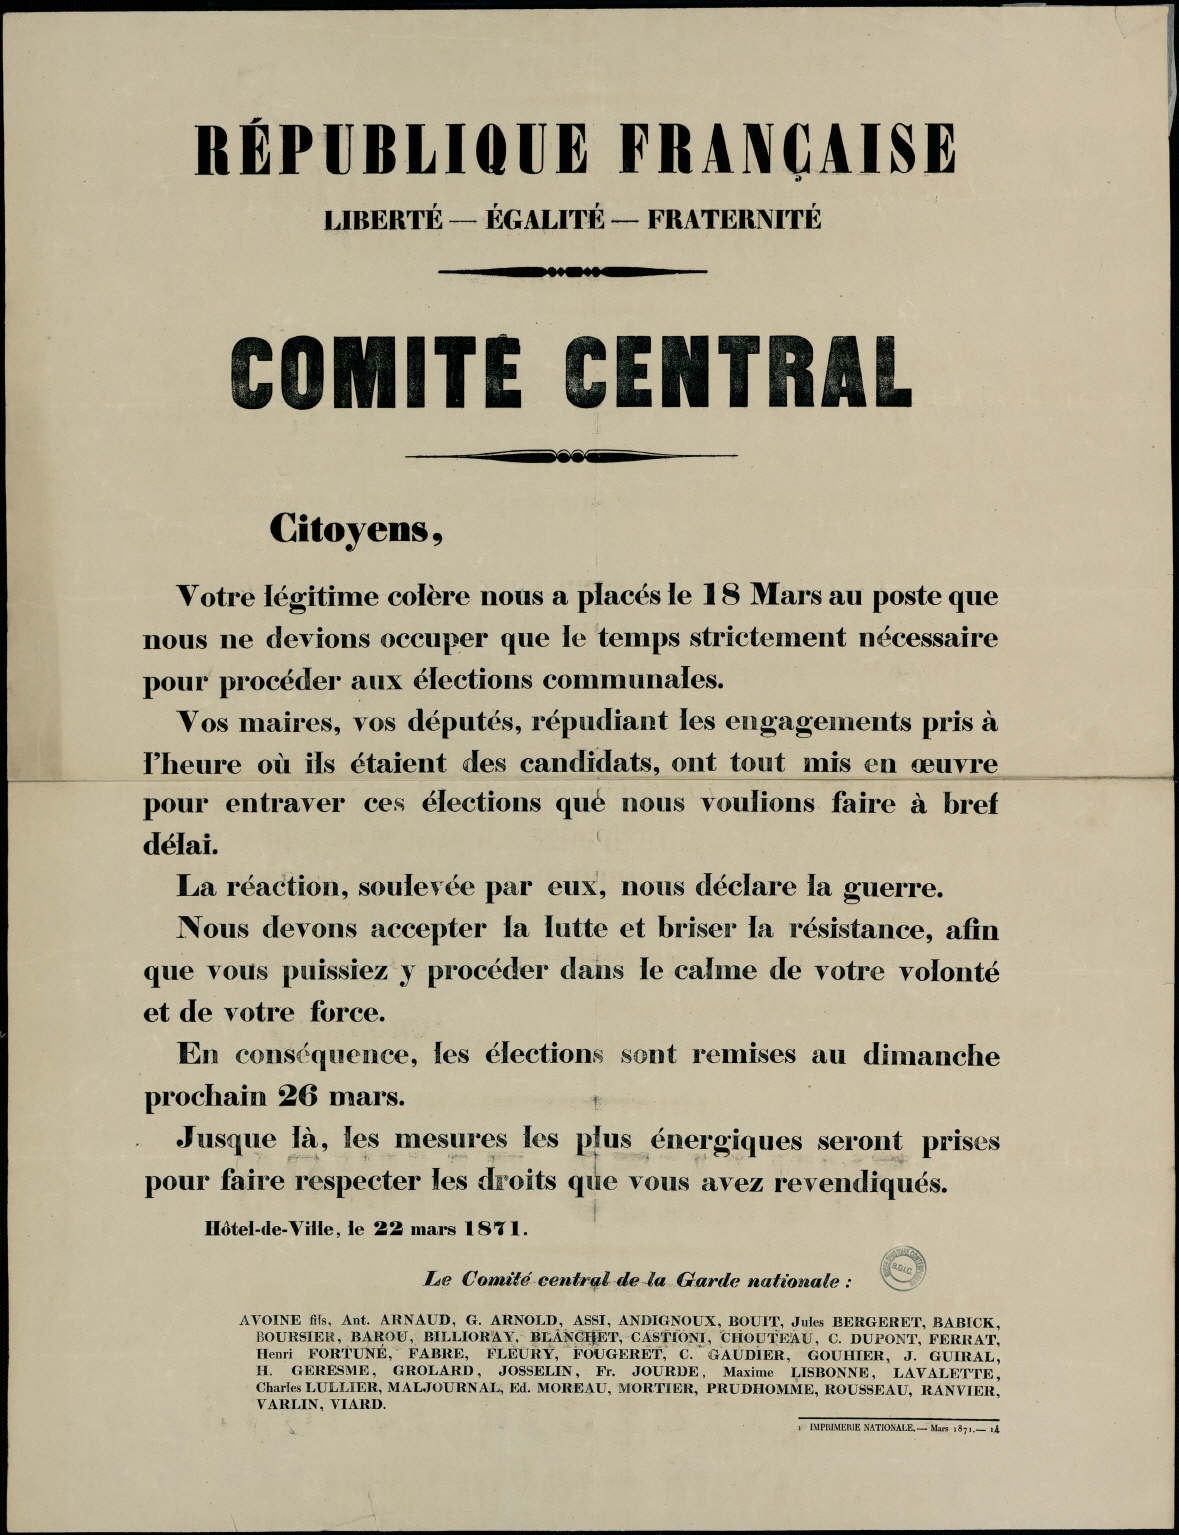 Affiche de la Commune de Paris du 22 mars 1871 - Le Comité central de la Garde nationale remet l'élection au 26 mars